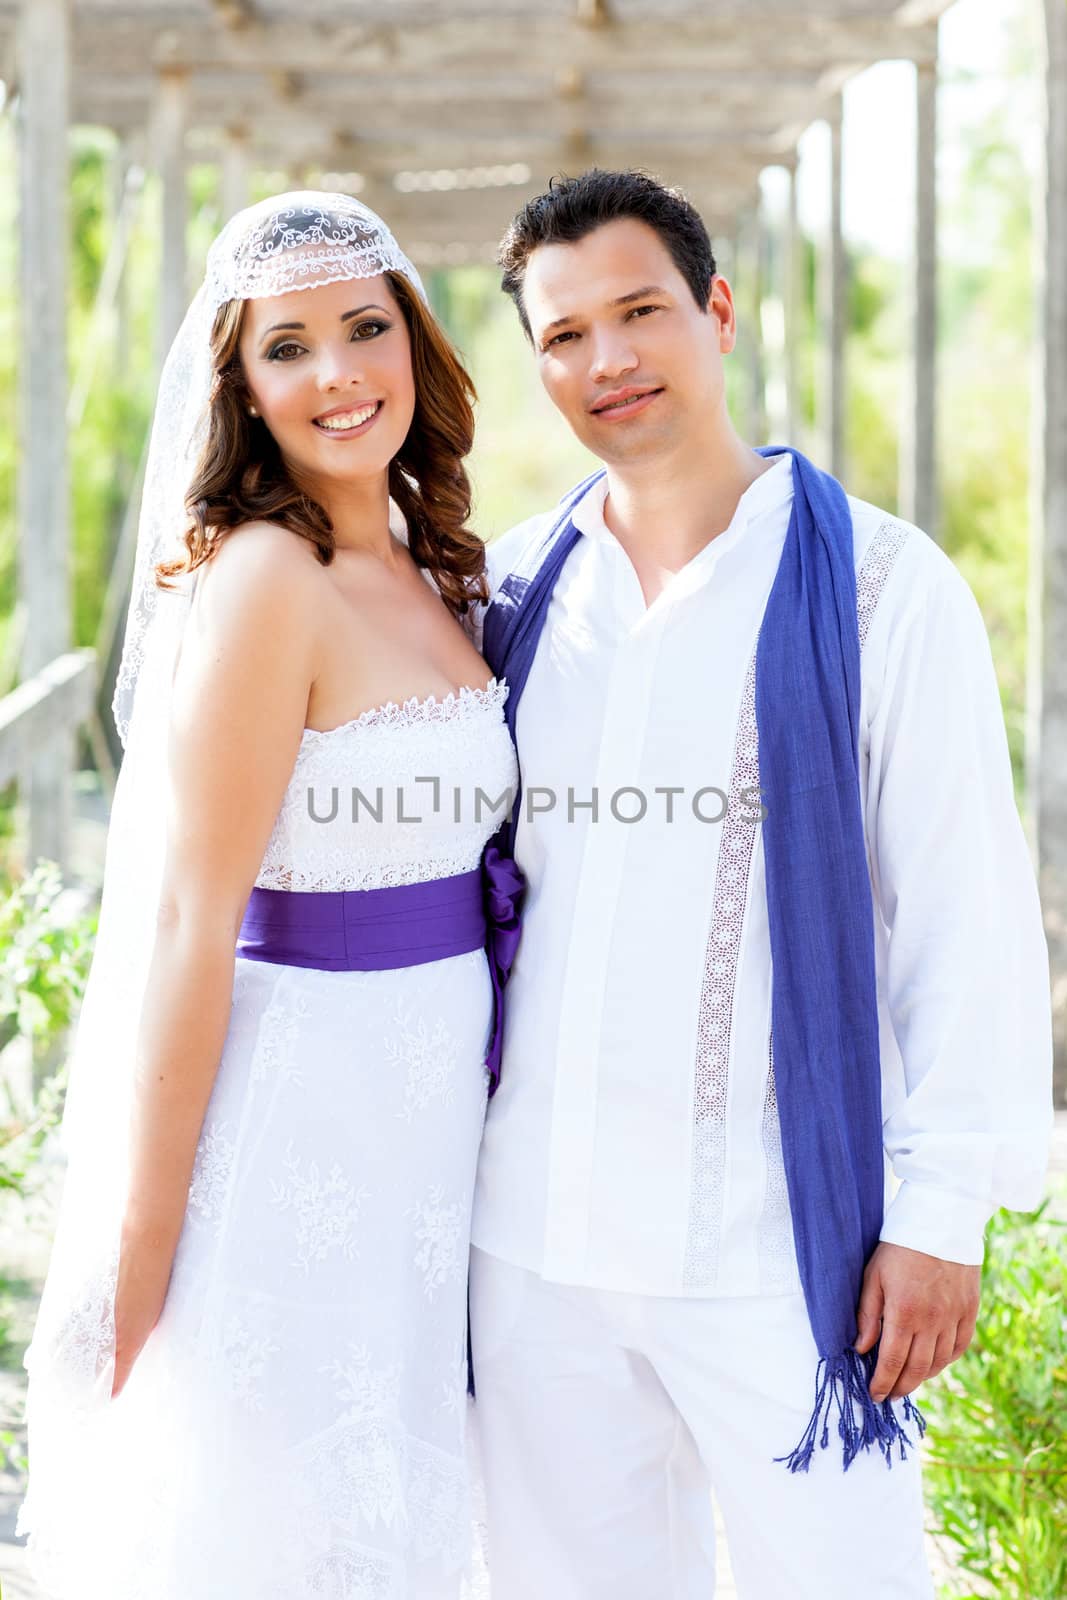 Couple happy hug in wedding day posing smiling in outdoor garden